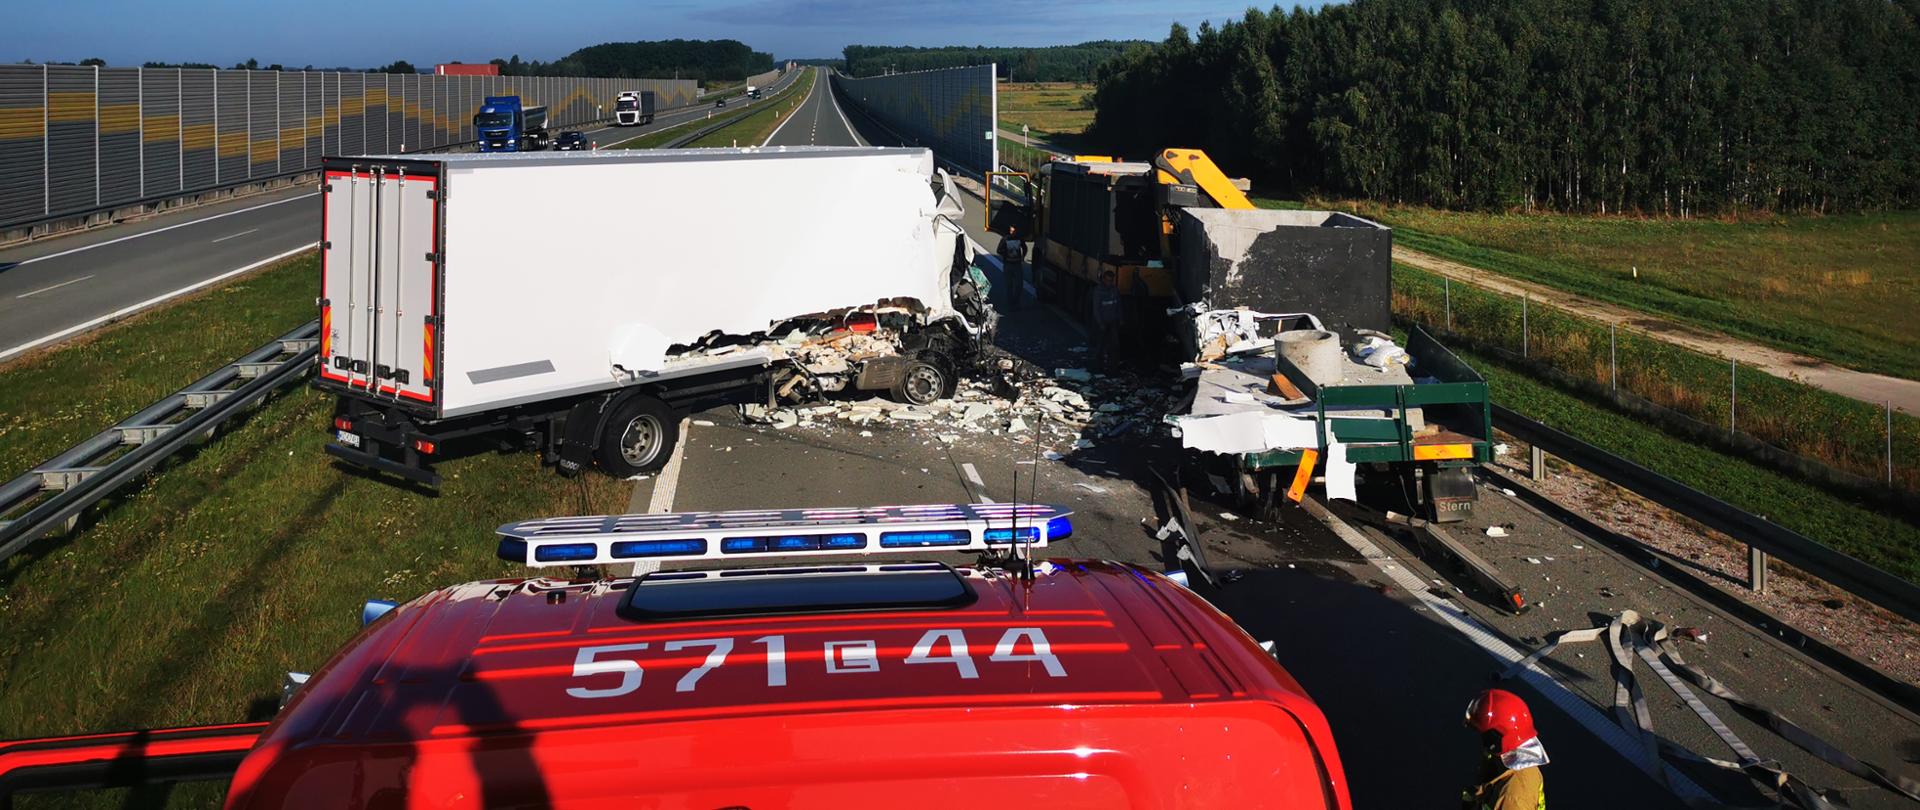 Zdjęcie przedstawia zablokowaną drogę ekspresową przez 2 samochody ciężarowe. Biały samochód ciężarowy po uderzeniu w przyczepę ustawioną na prawym poboczu drogi zatrzymał się w poprzek drogi. 